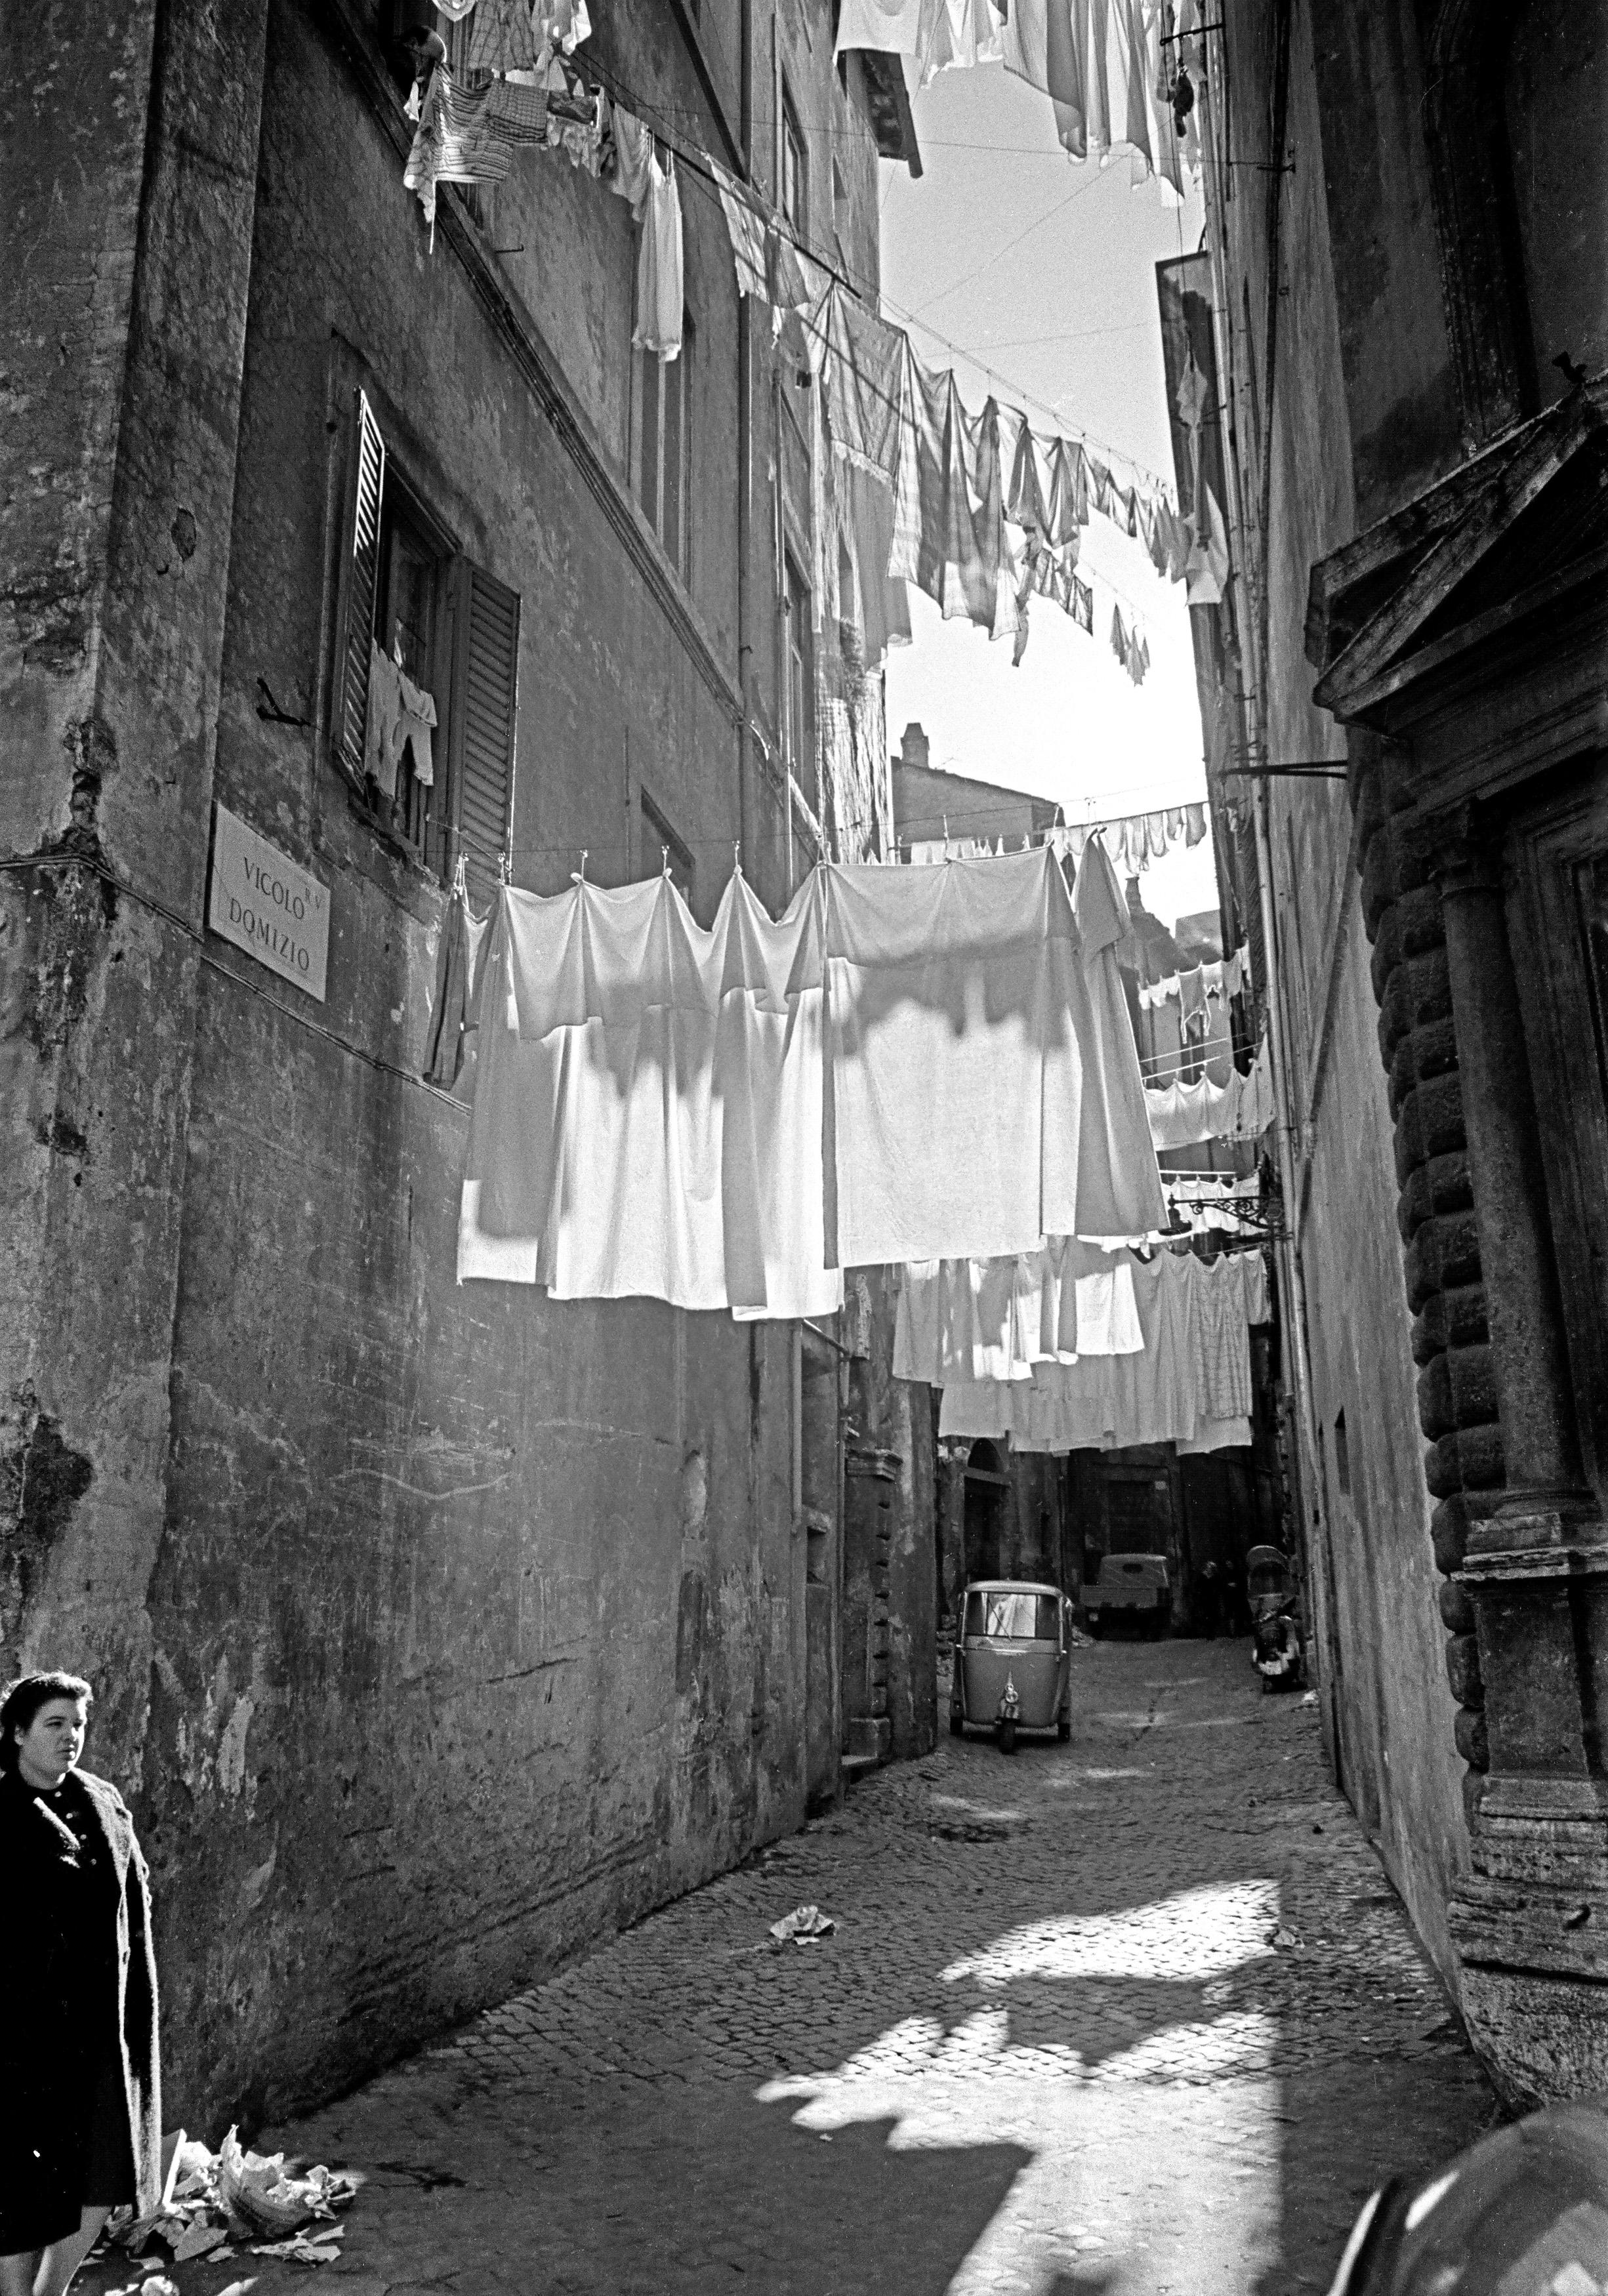 Fabrizio La Torre Black and White Photograph - L'Attesa - Roma - # 5 on 5 - Contemporary Photorealist Black & White Photography